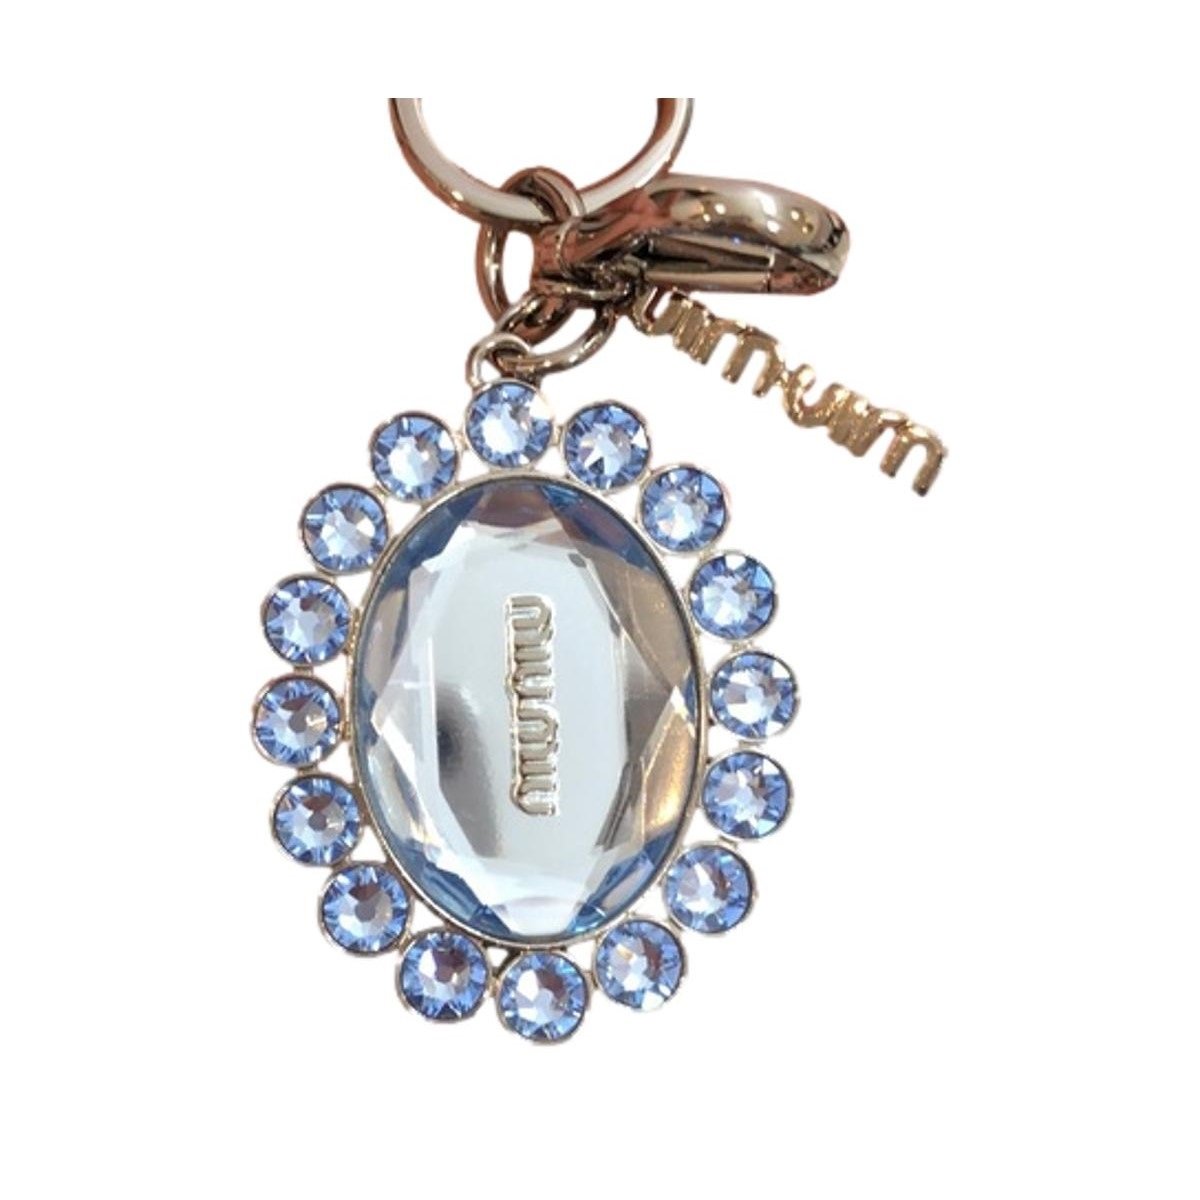 Miu Miu Trick Metallo Oval Crystal Blue Plex Charm Keychain 